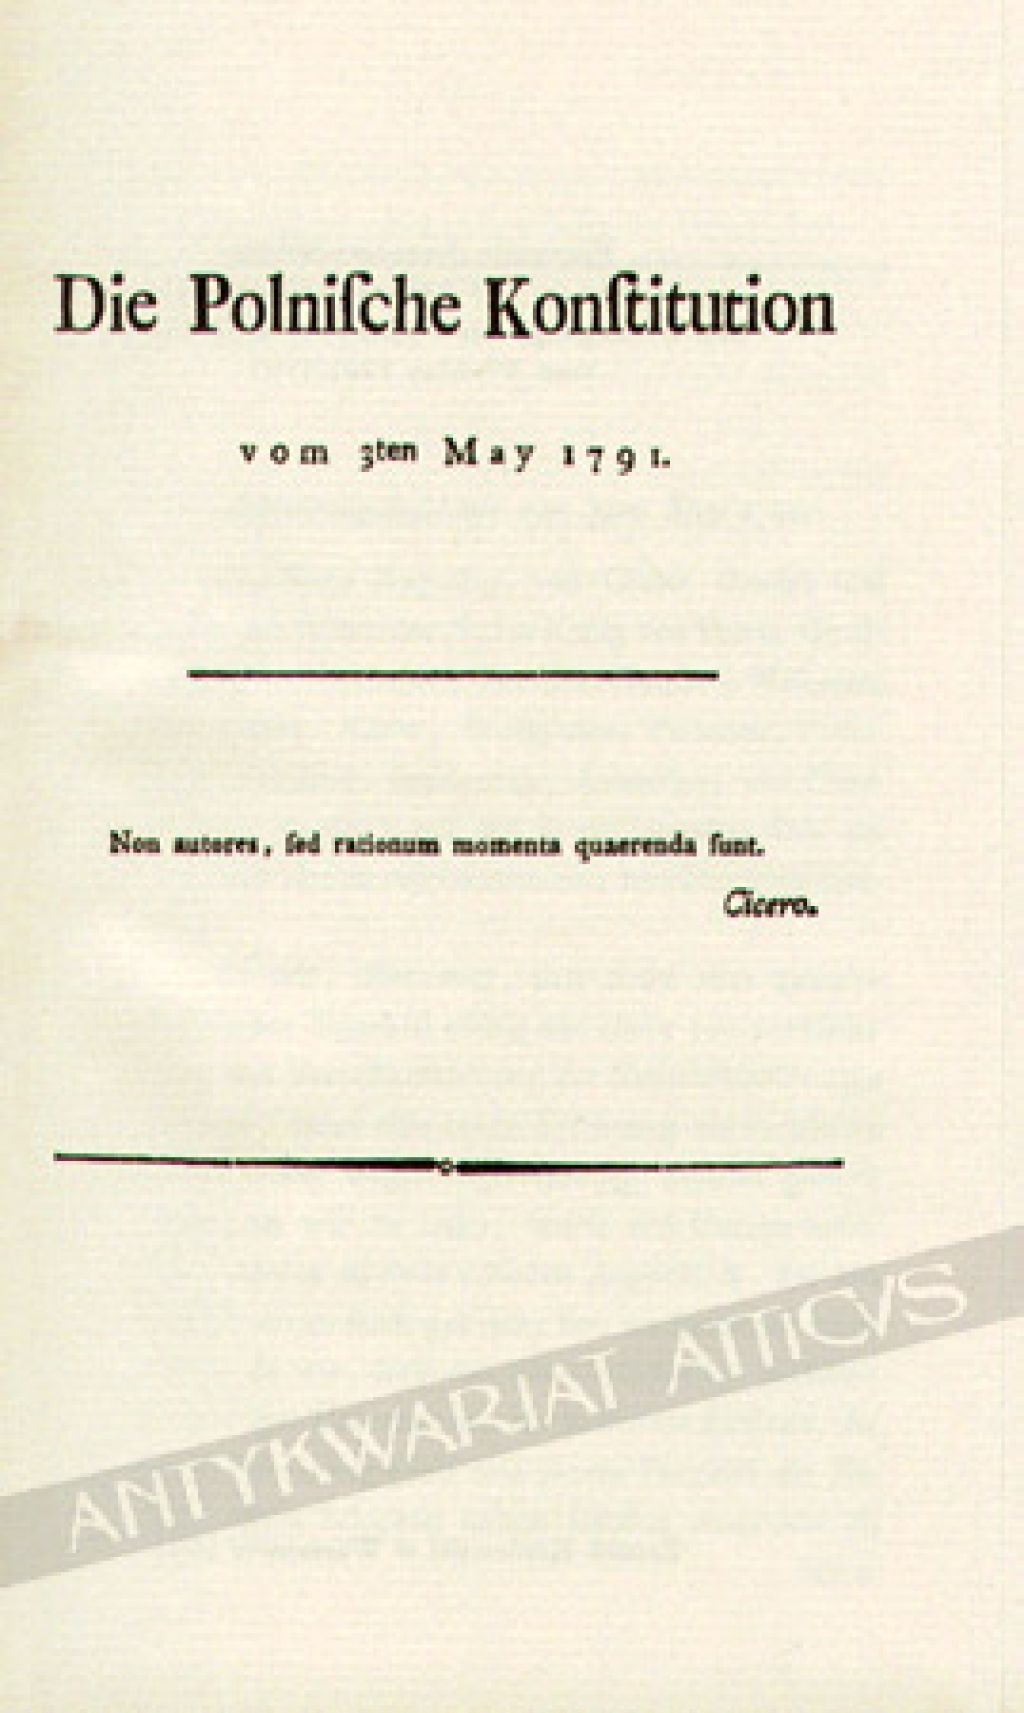 Die Polnische Konstitution vom 3ten May 1791 [reprint]